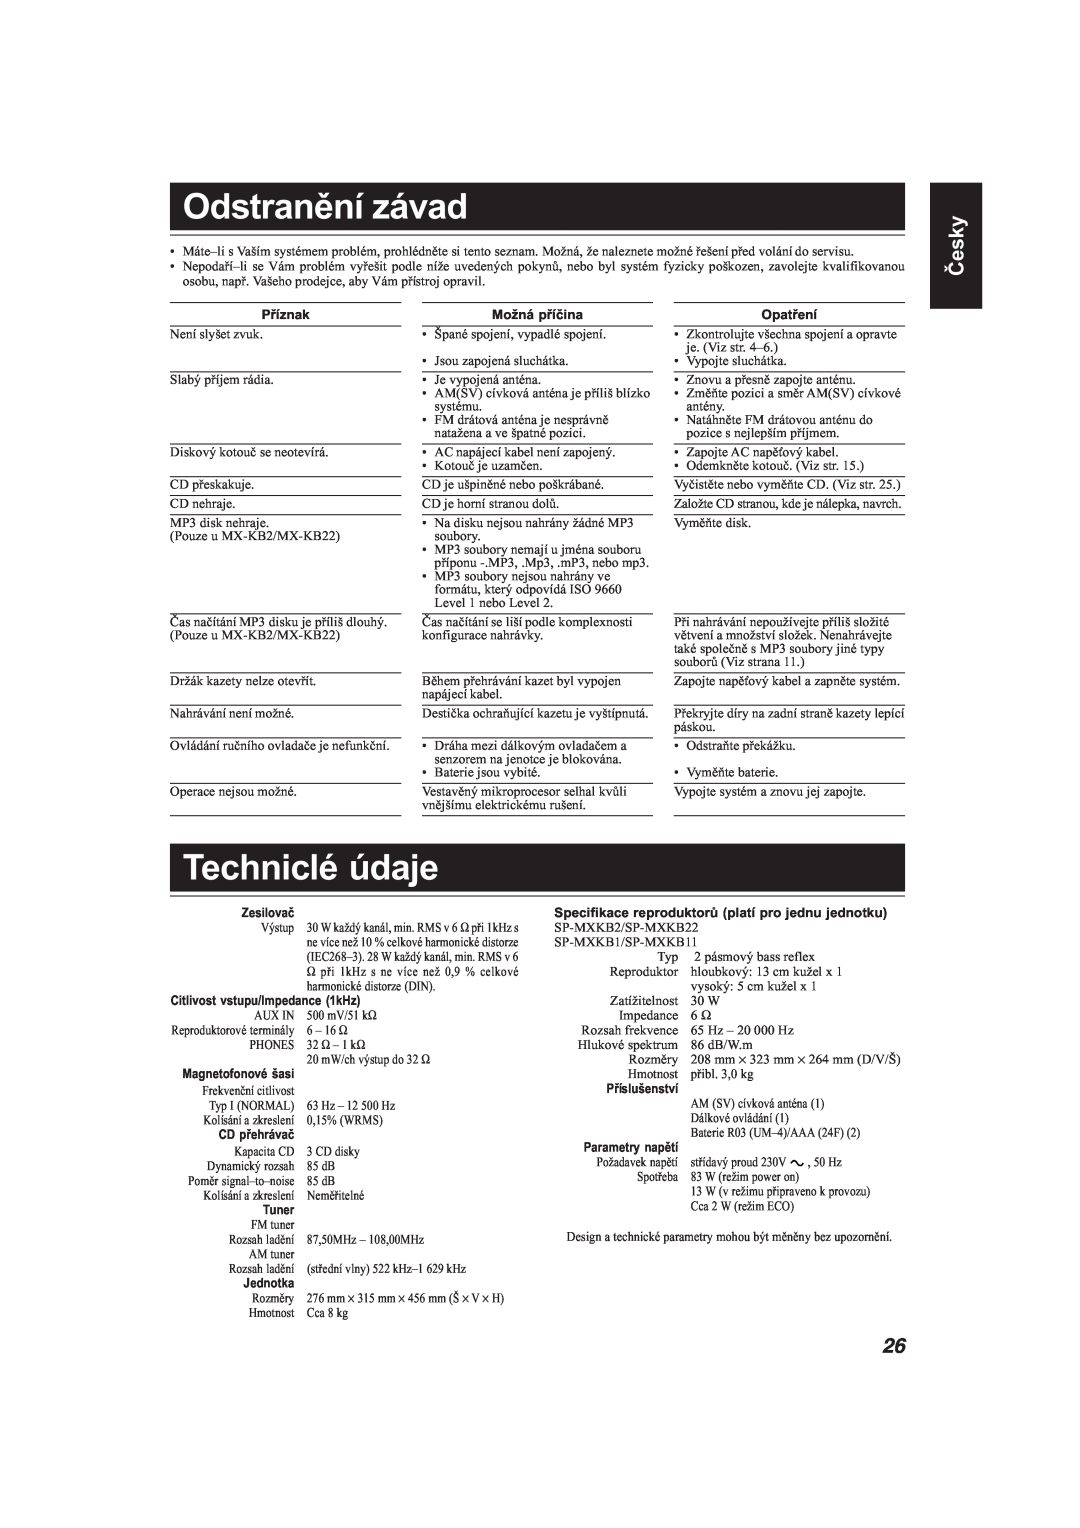 JVC MX-KB22, MX-KB11 manual Odstranění závad, Techniclé údaje, Česky 